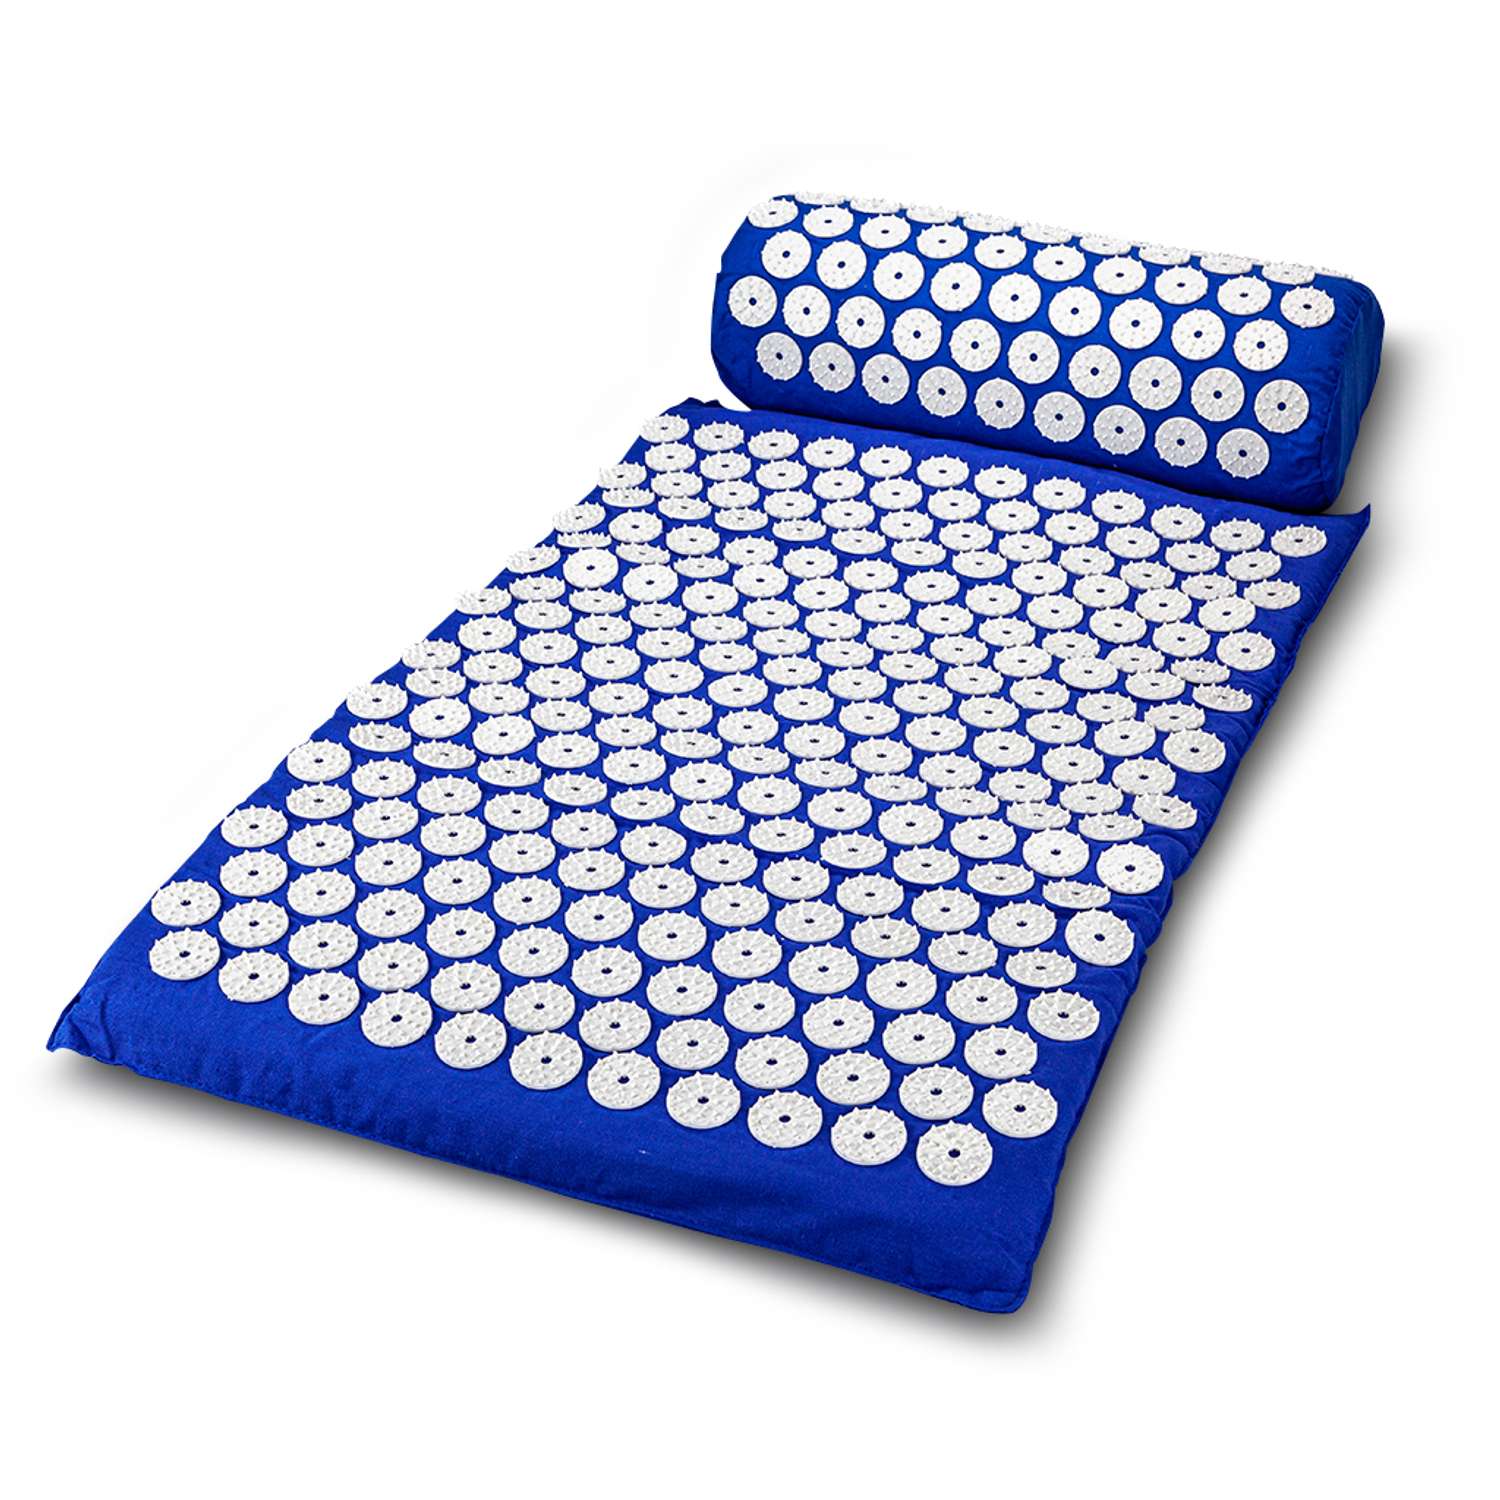 Аппликатор Кузнецова Solmax акупунктурный игольчатый массажный коврик с валиком 68х42 см синий - фото 2